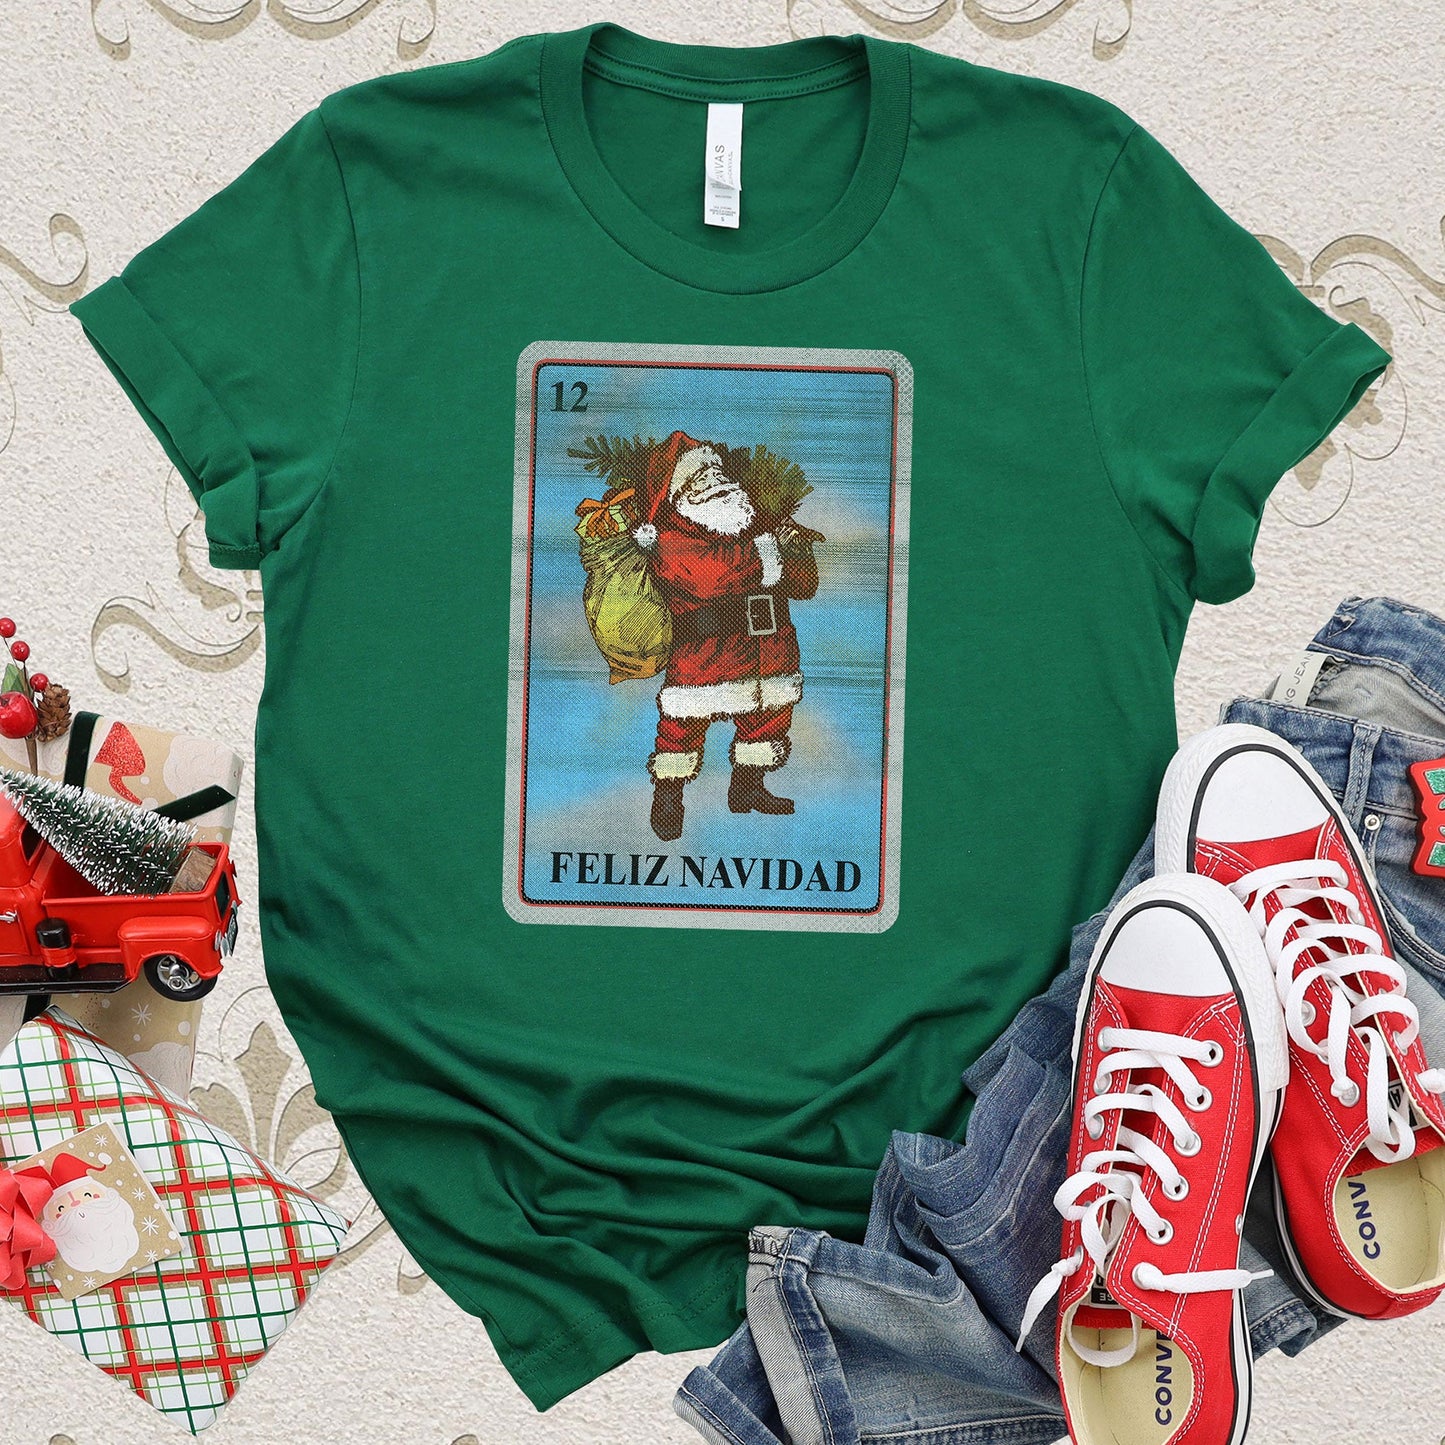 Christmas Card T-shirt, Christmas Tee